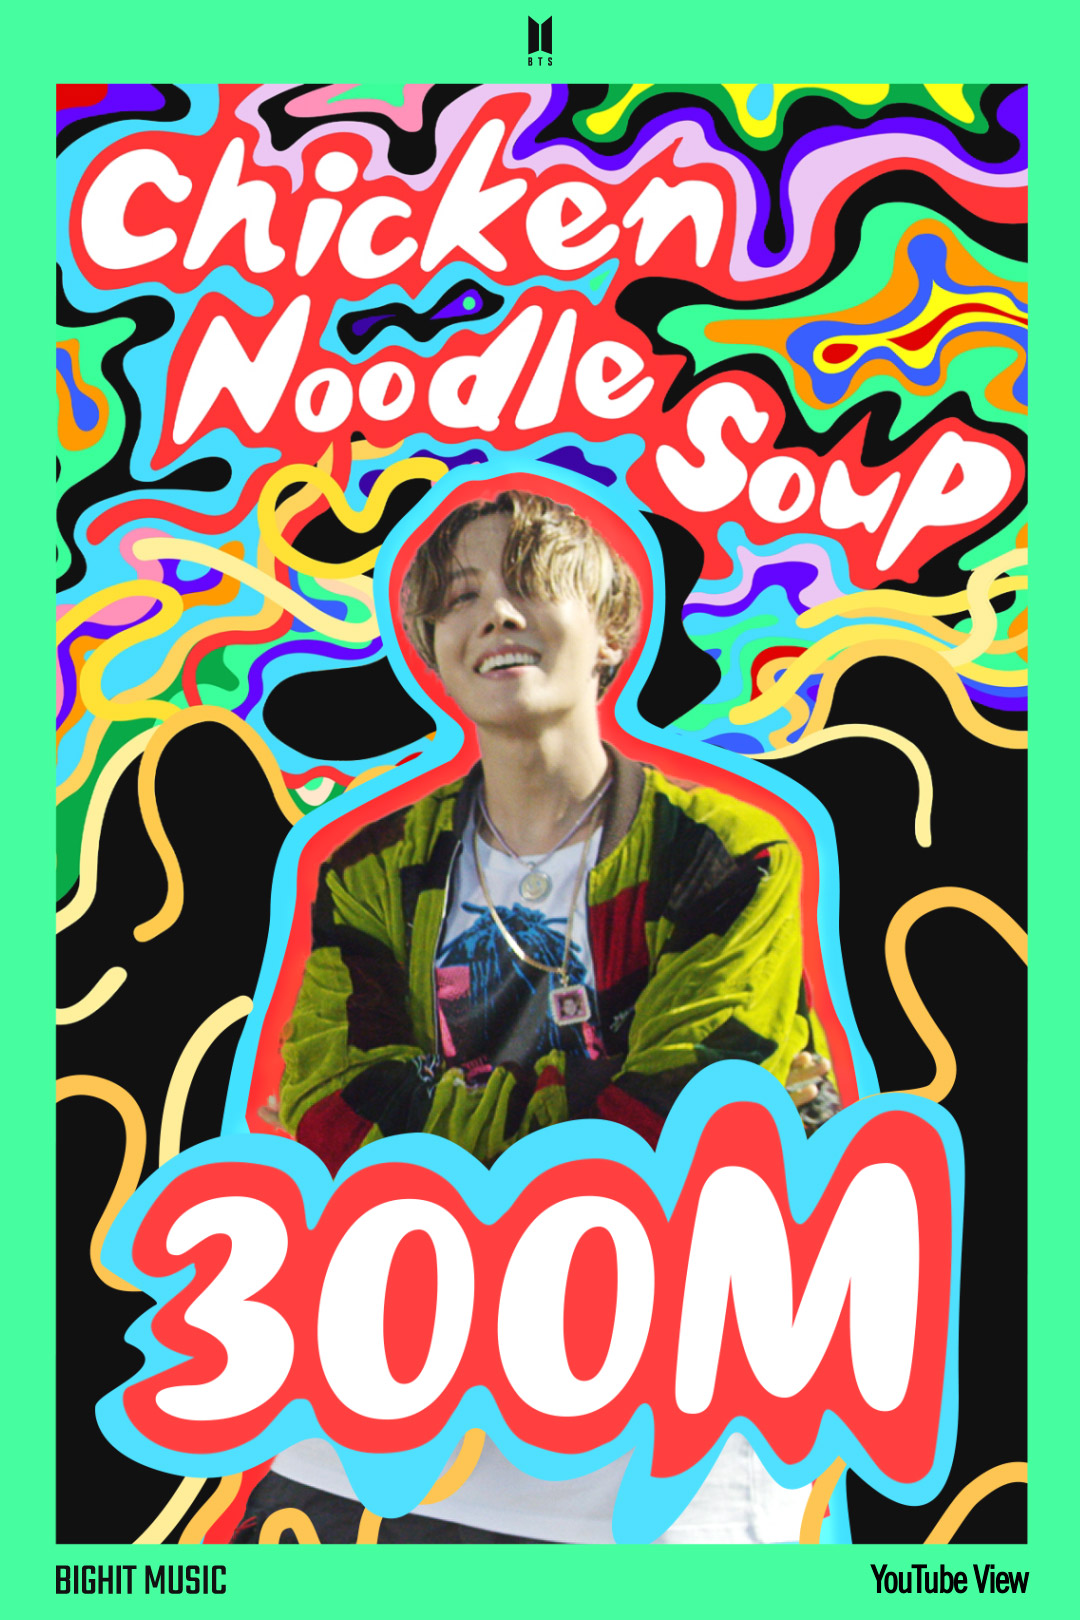 방탄소년단 제이홉, ‘Chicken Noodle Soup (feat. Becky G)’ M/V 3억 뷰 돌파